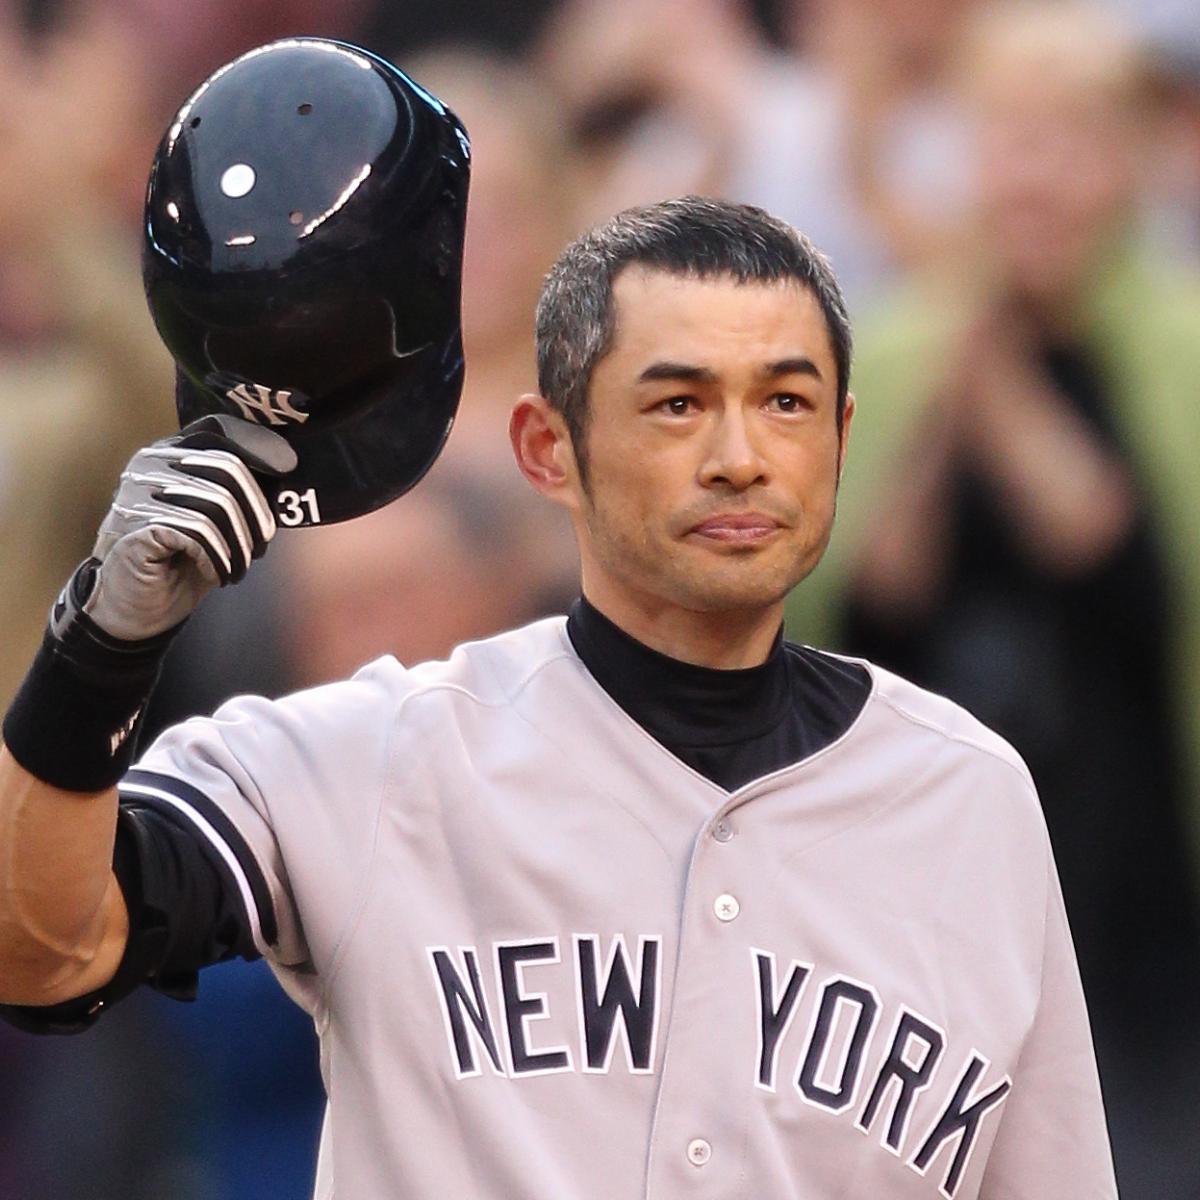 Ichiro Suzuki Net Worth